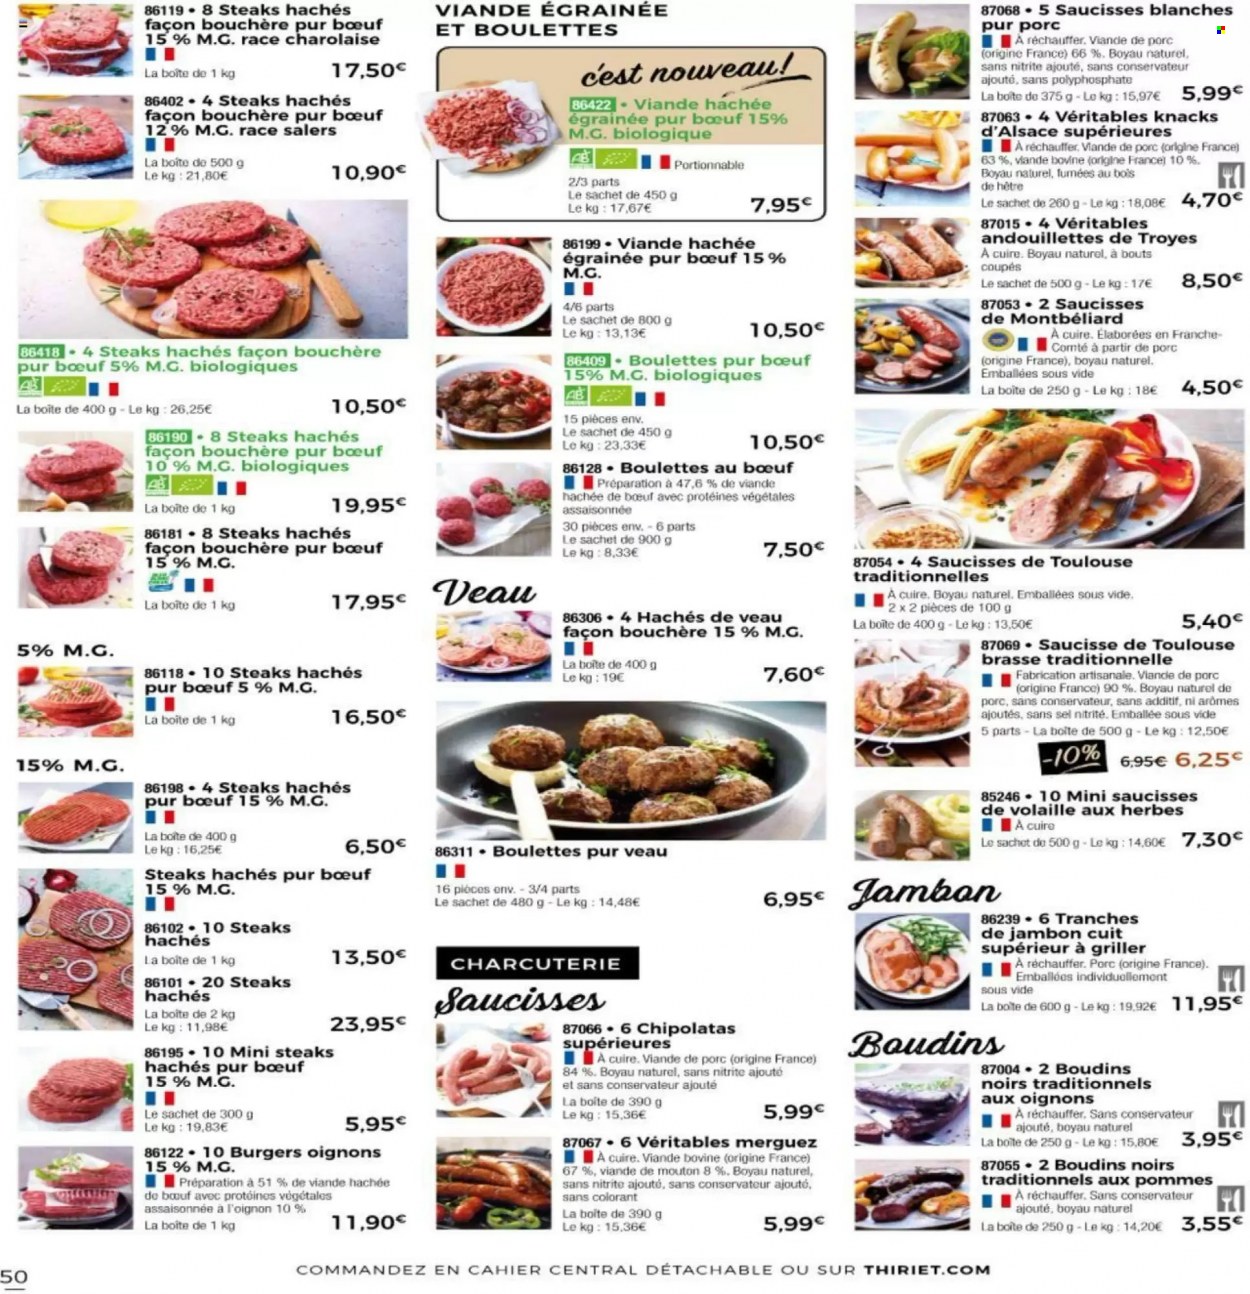 thumbnail - Catalogue Thiriet - 08/06/2022 - 01/07/2022 - Produits soldés - viande de porc, viande de veau, steak haché, boulettes de bœuf, viande hachée, knack d'Alsace, merguez, saucisse, chipolata, Knacks, Comté. Page 45.